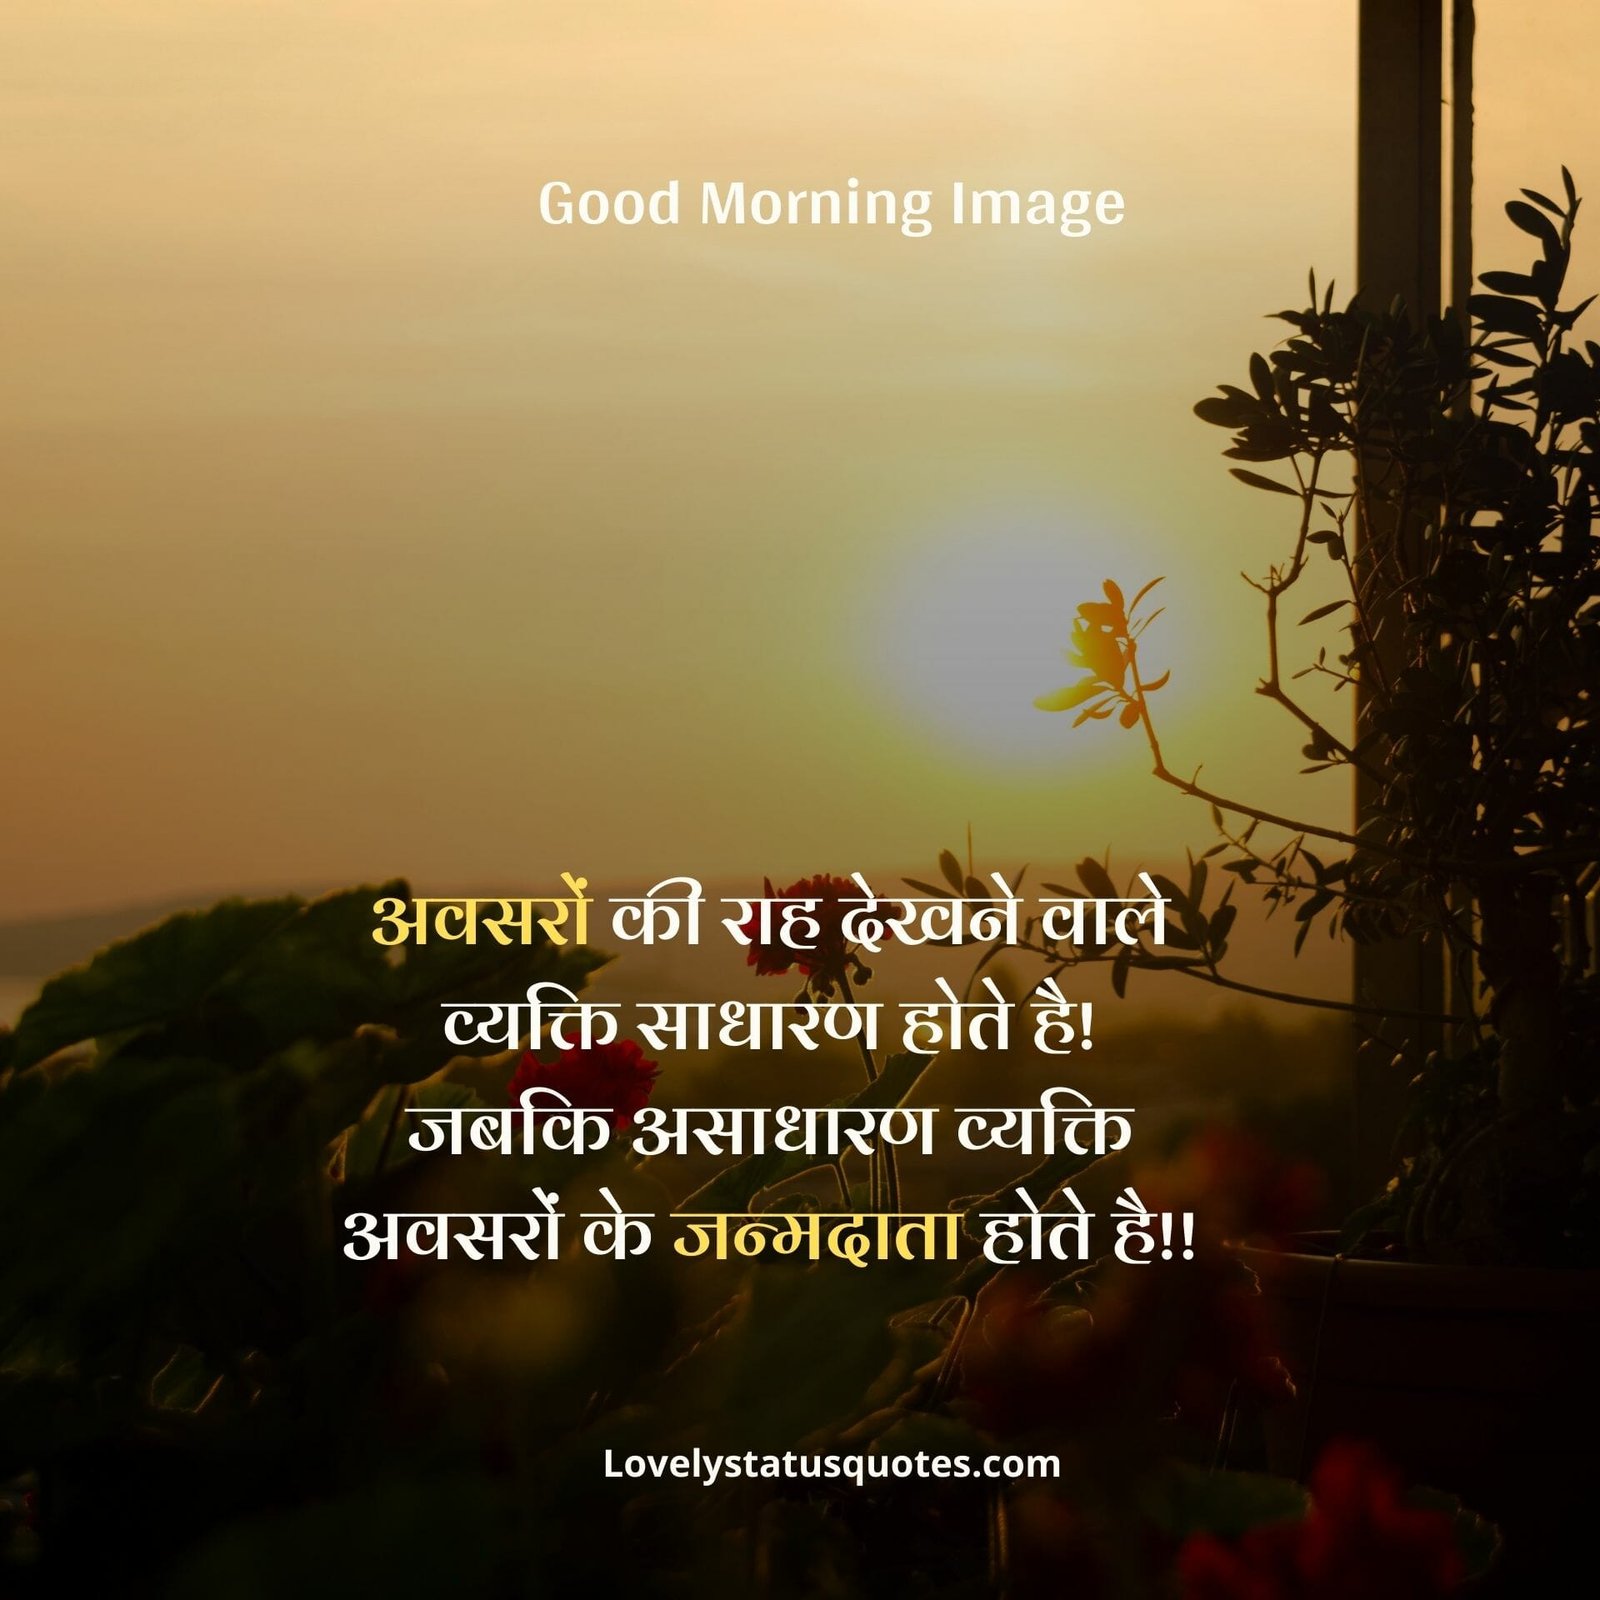 Good Morning Shayari Image Download